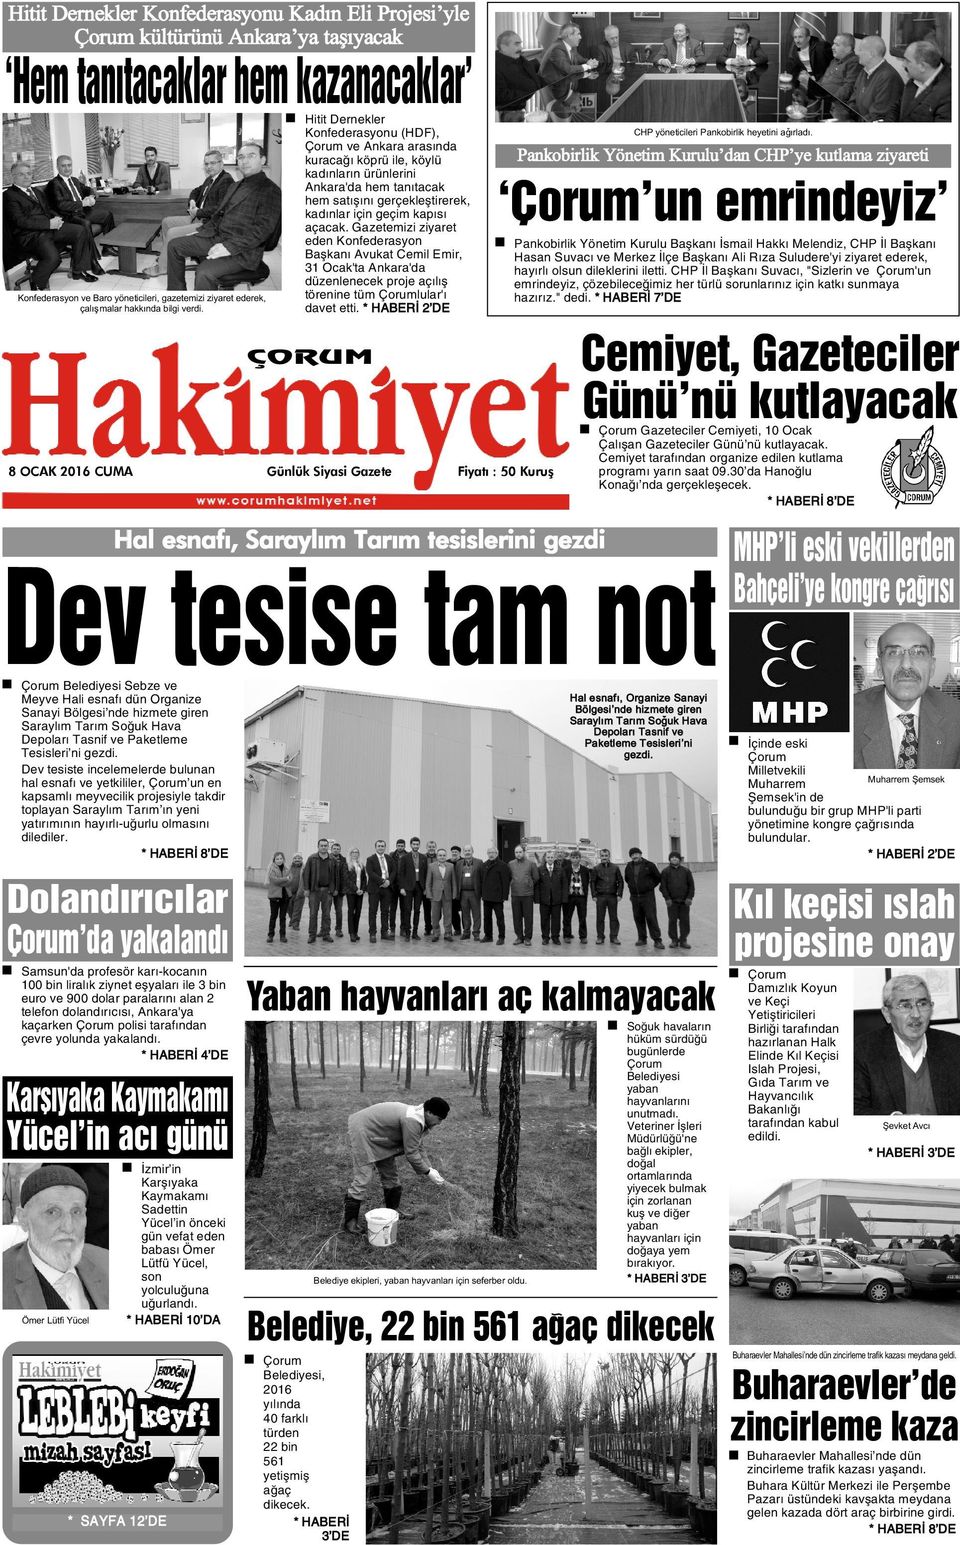 Gazetemizi ziyaret eden Konfederasyon Baþkaný Avukat Cemil Emir, 31 Ocak'ta Ankara'da düzenlenecek proje açýlýþ Konfederasyon ve Baro yöneticileri, gazetemizi ziyaret ederek, çalýþmalar hakkýnda